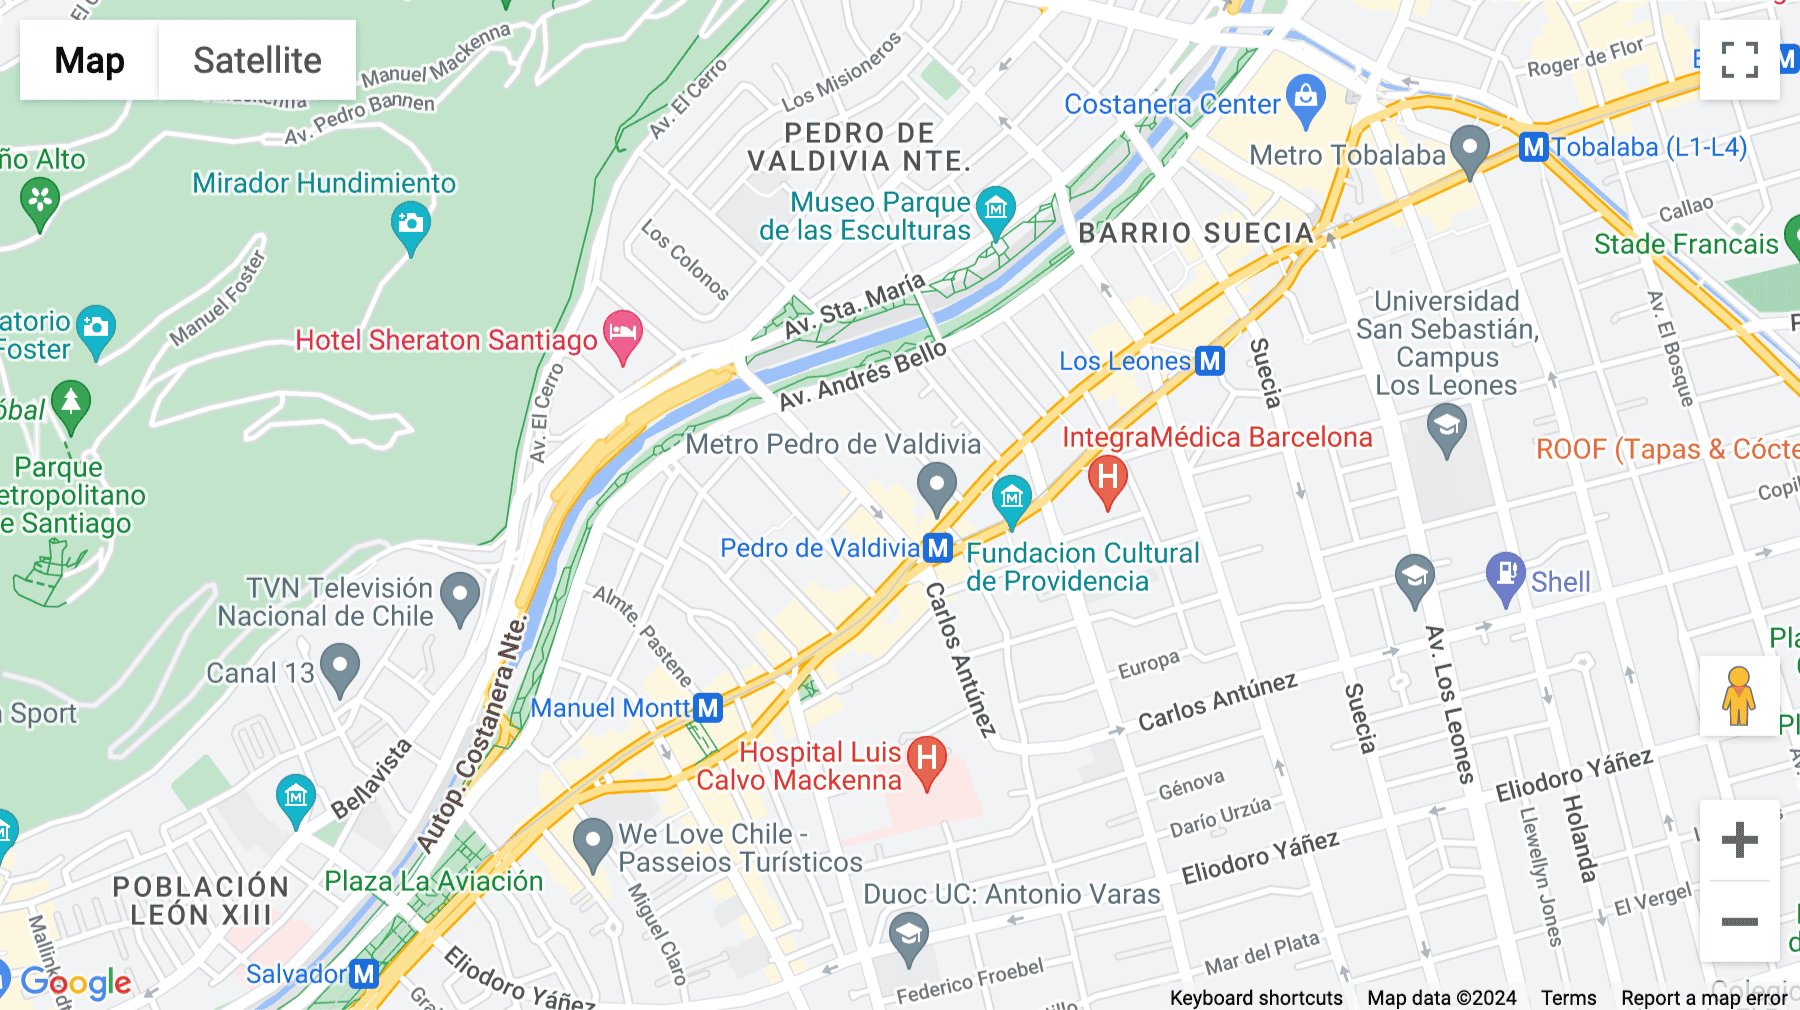 Click for interative map of La Concepción 81, piso 9, oficina 903, Providencia, Santiago